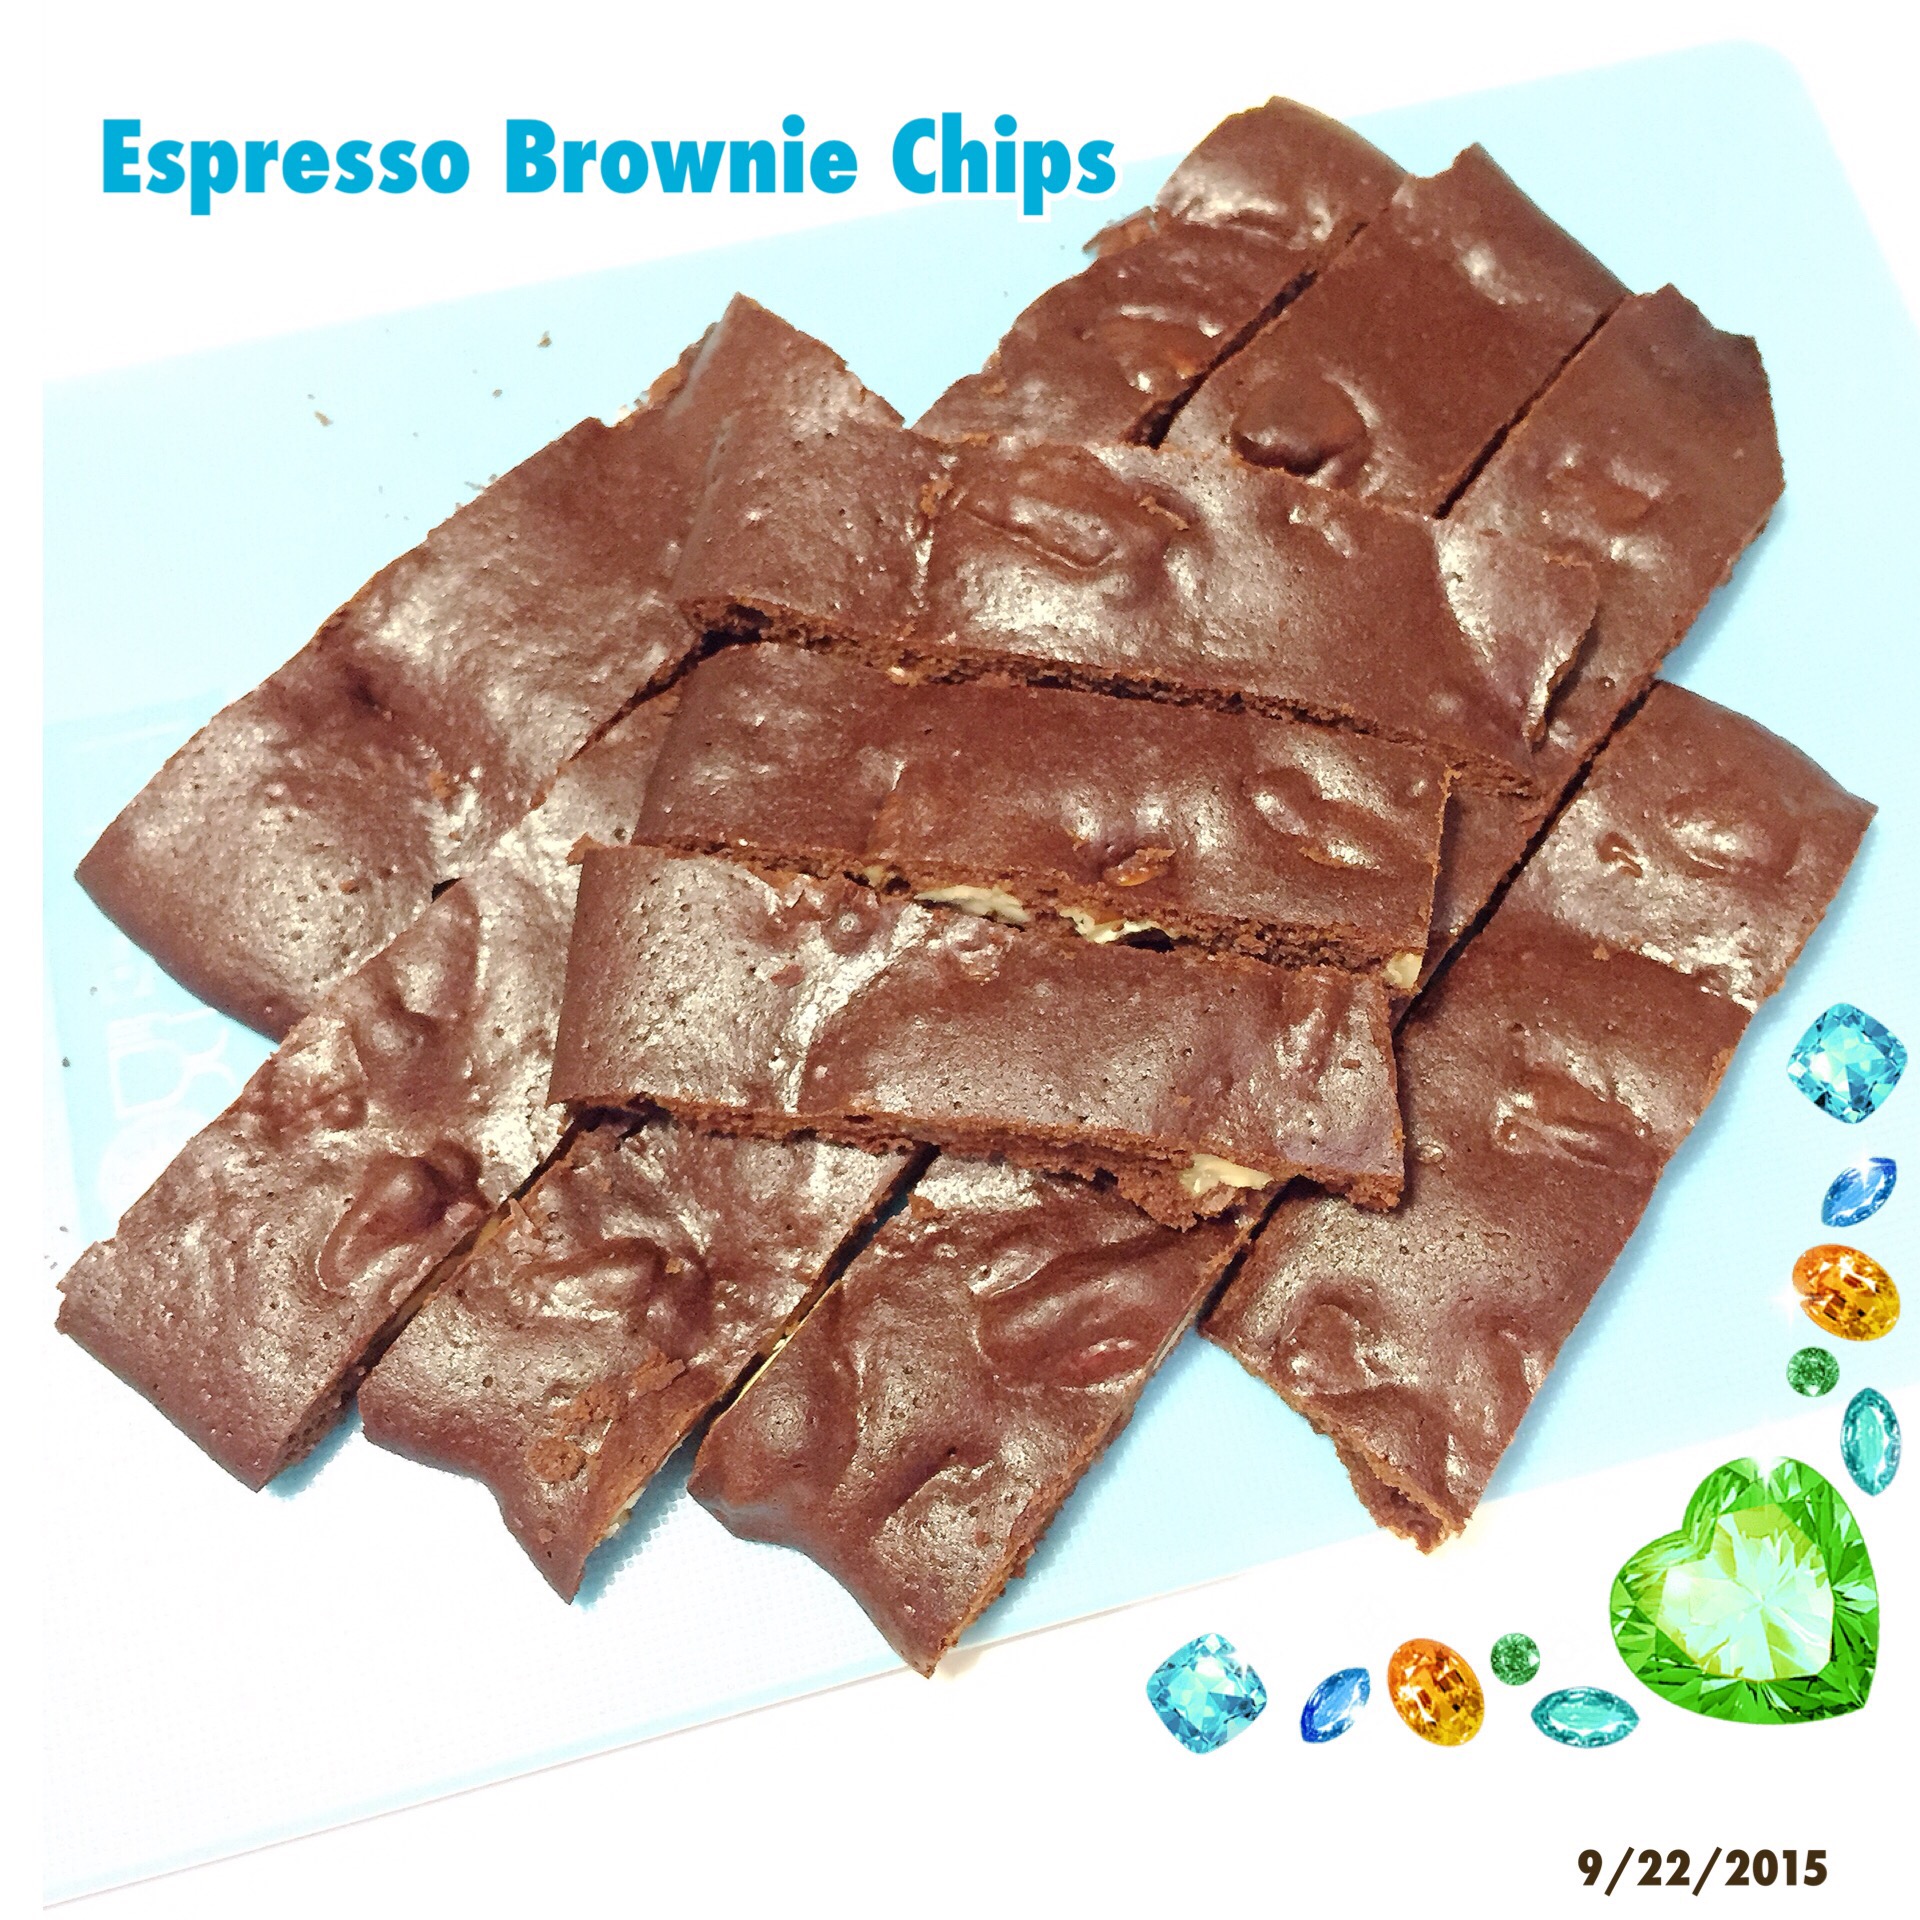 C: Espresso Brownie Chips